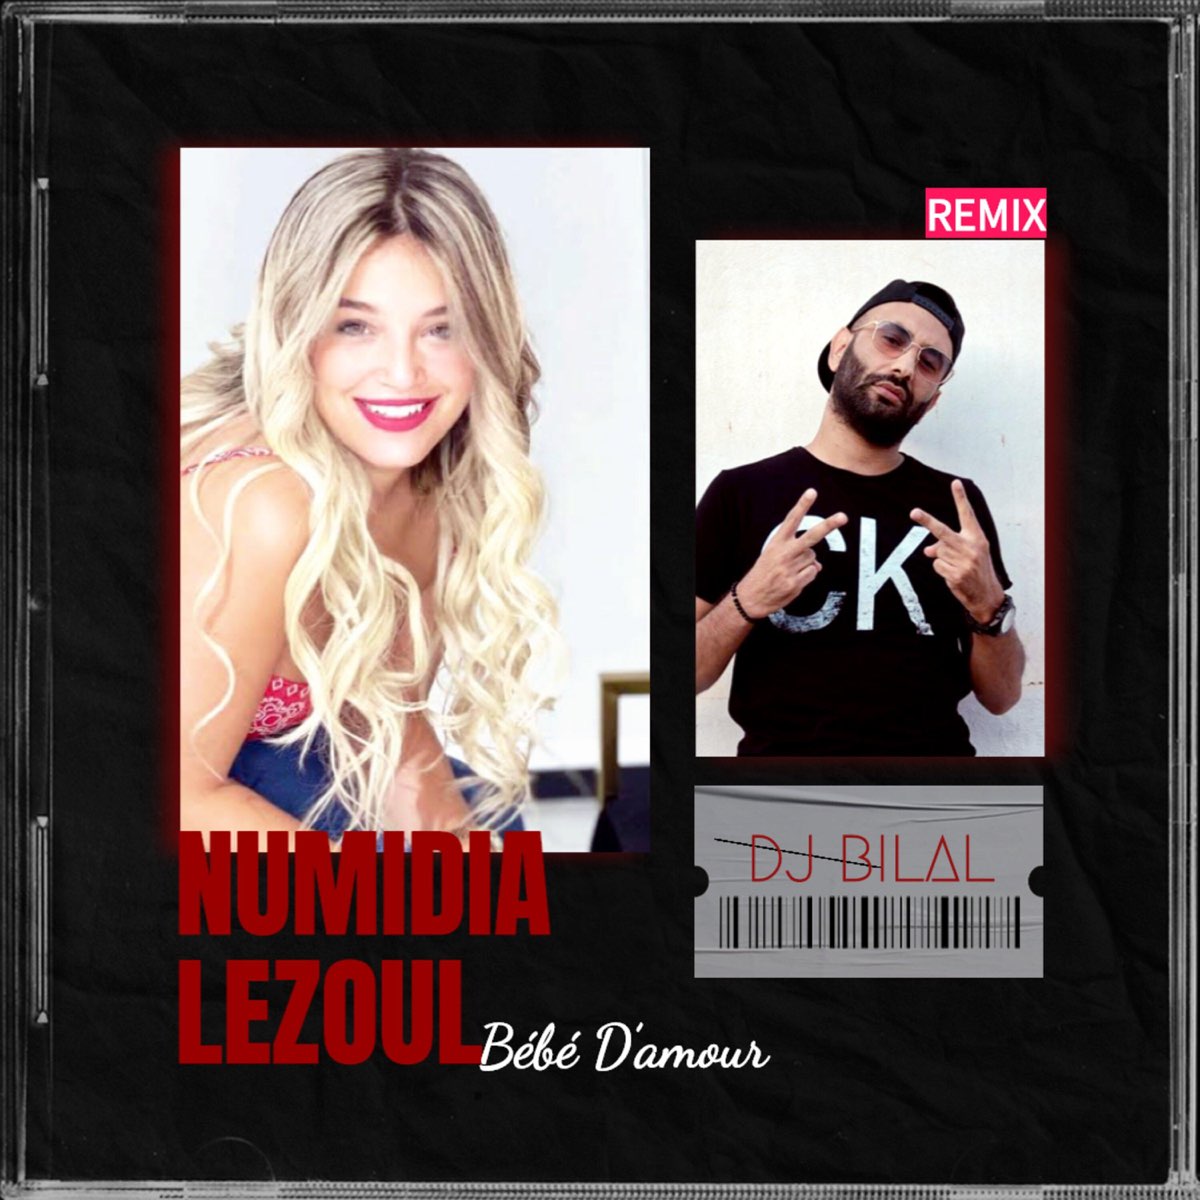 Bebe D Amour Feat Numidia Lezoul Remix Remix Single Par Dj Bilal Sur Apple Music